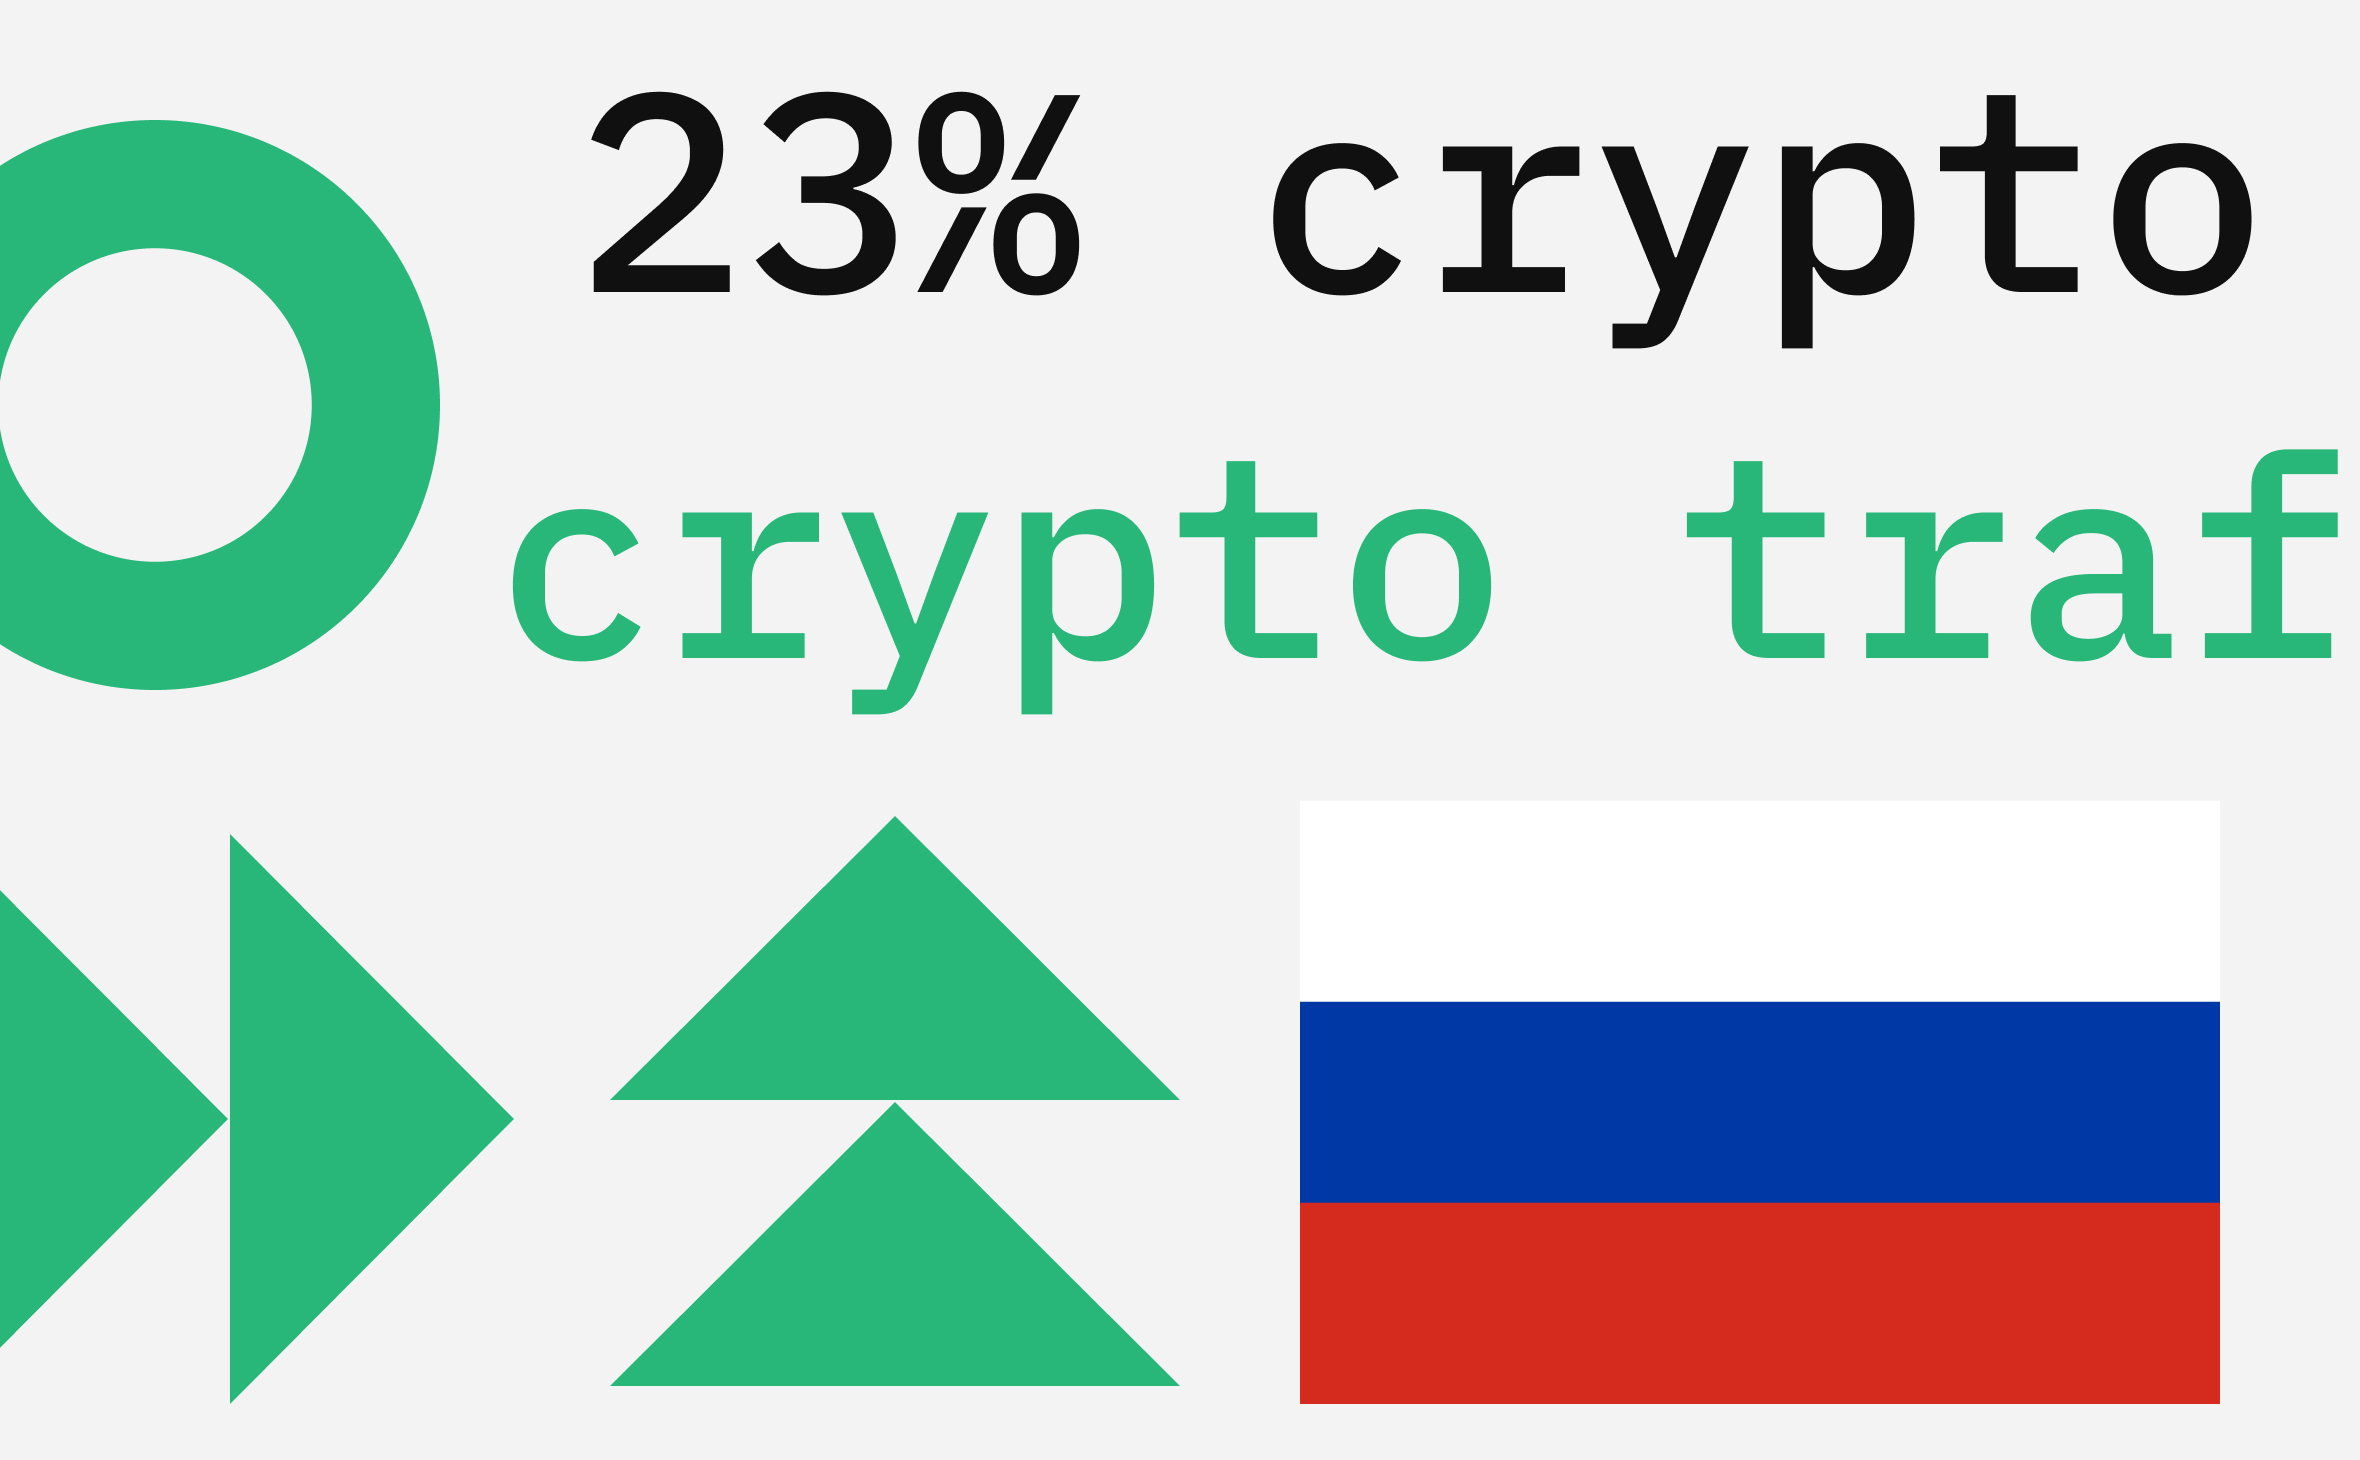 В феврале на Россию пришлось до 23% трафика на крупнейших криптобиржах